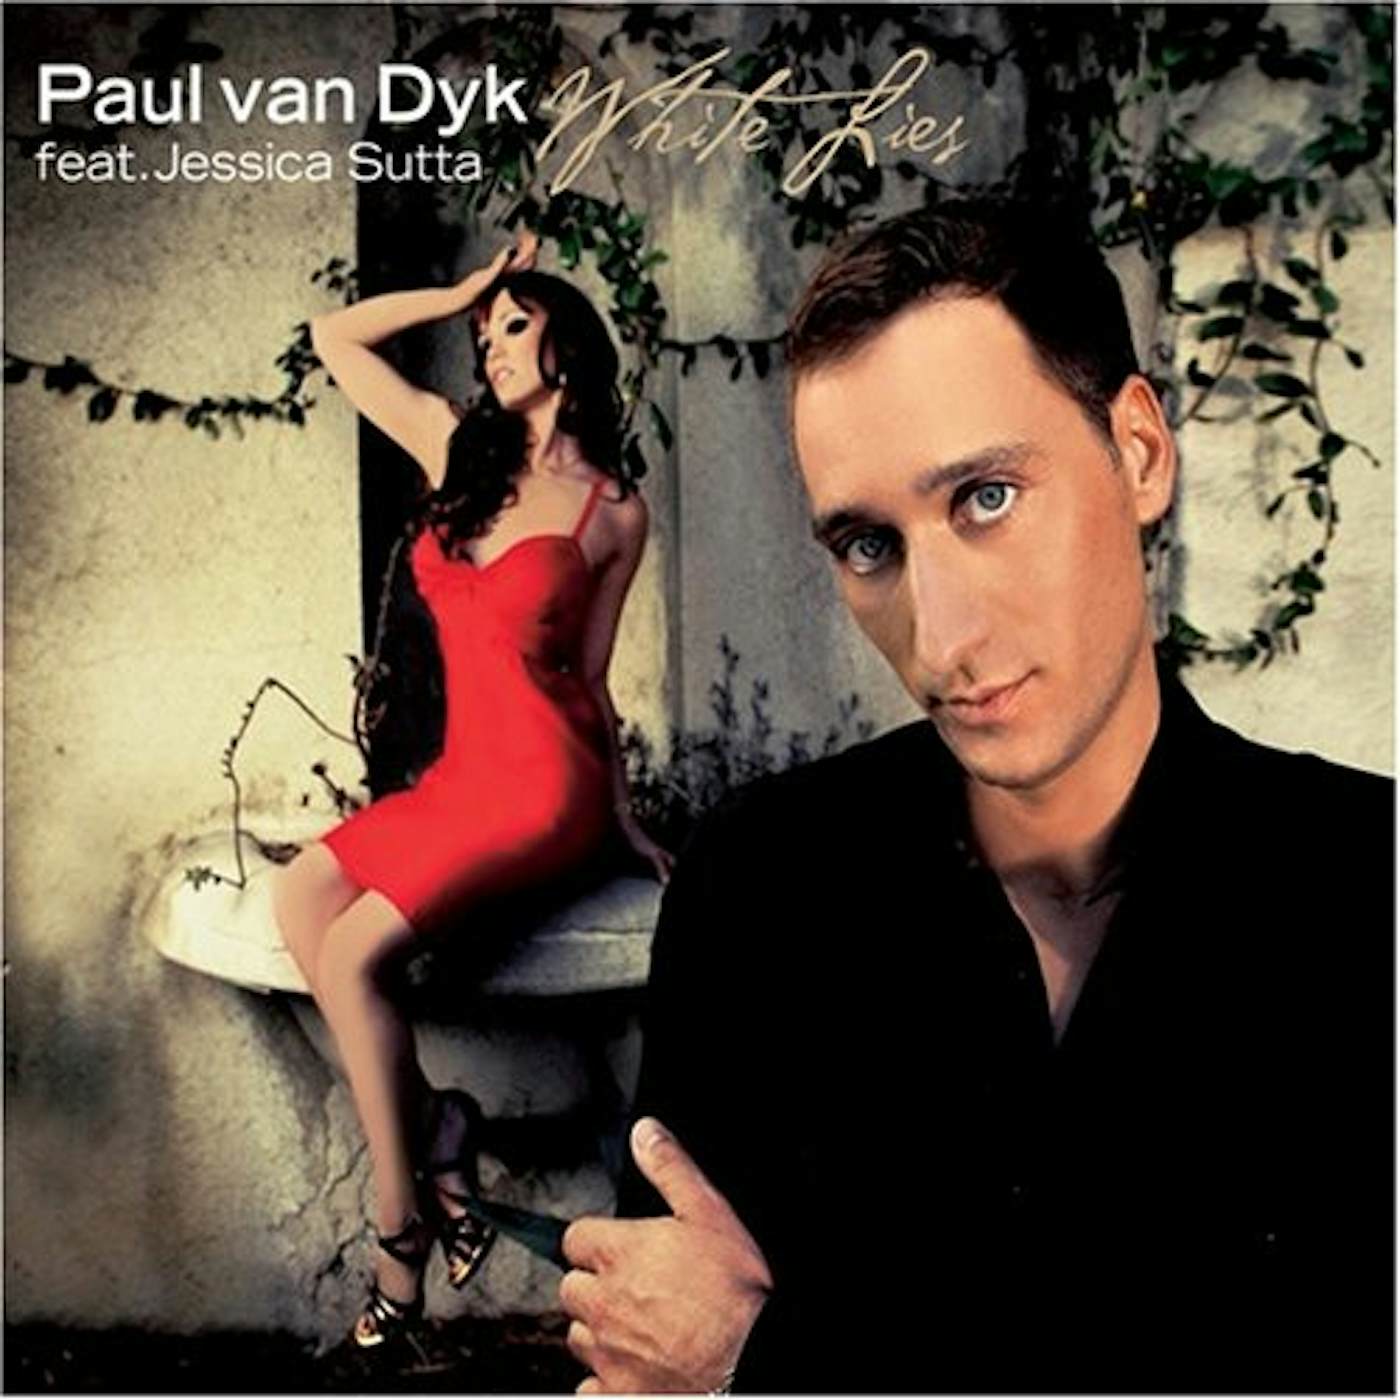 Paul van Dyk WHITE LIES CD